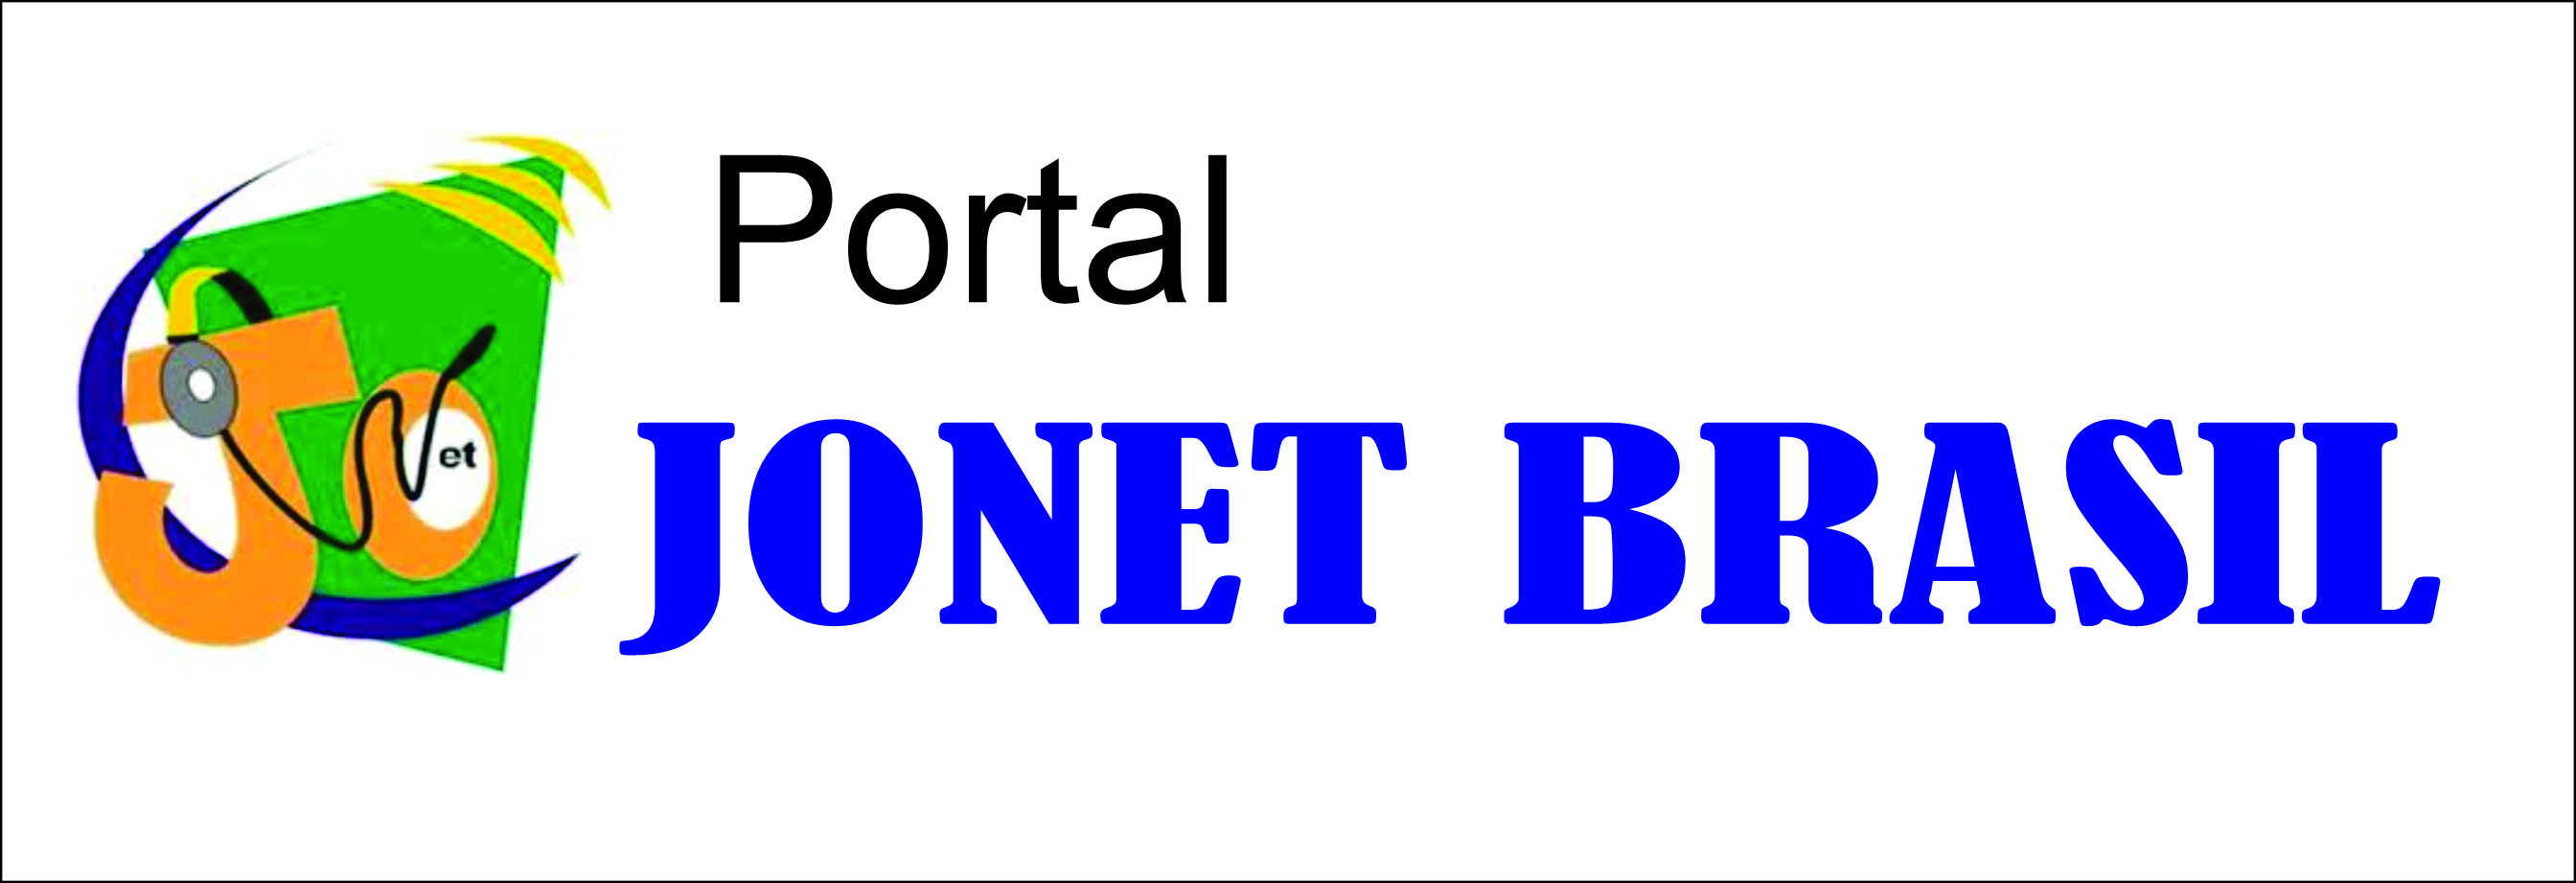 Portal Jonet Brasil